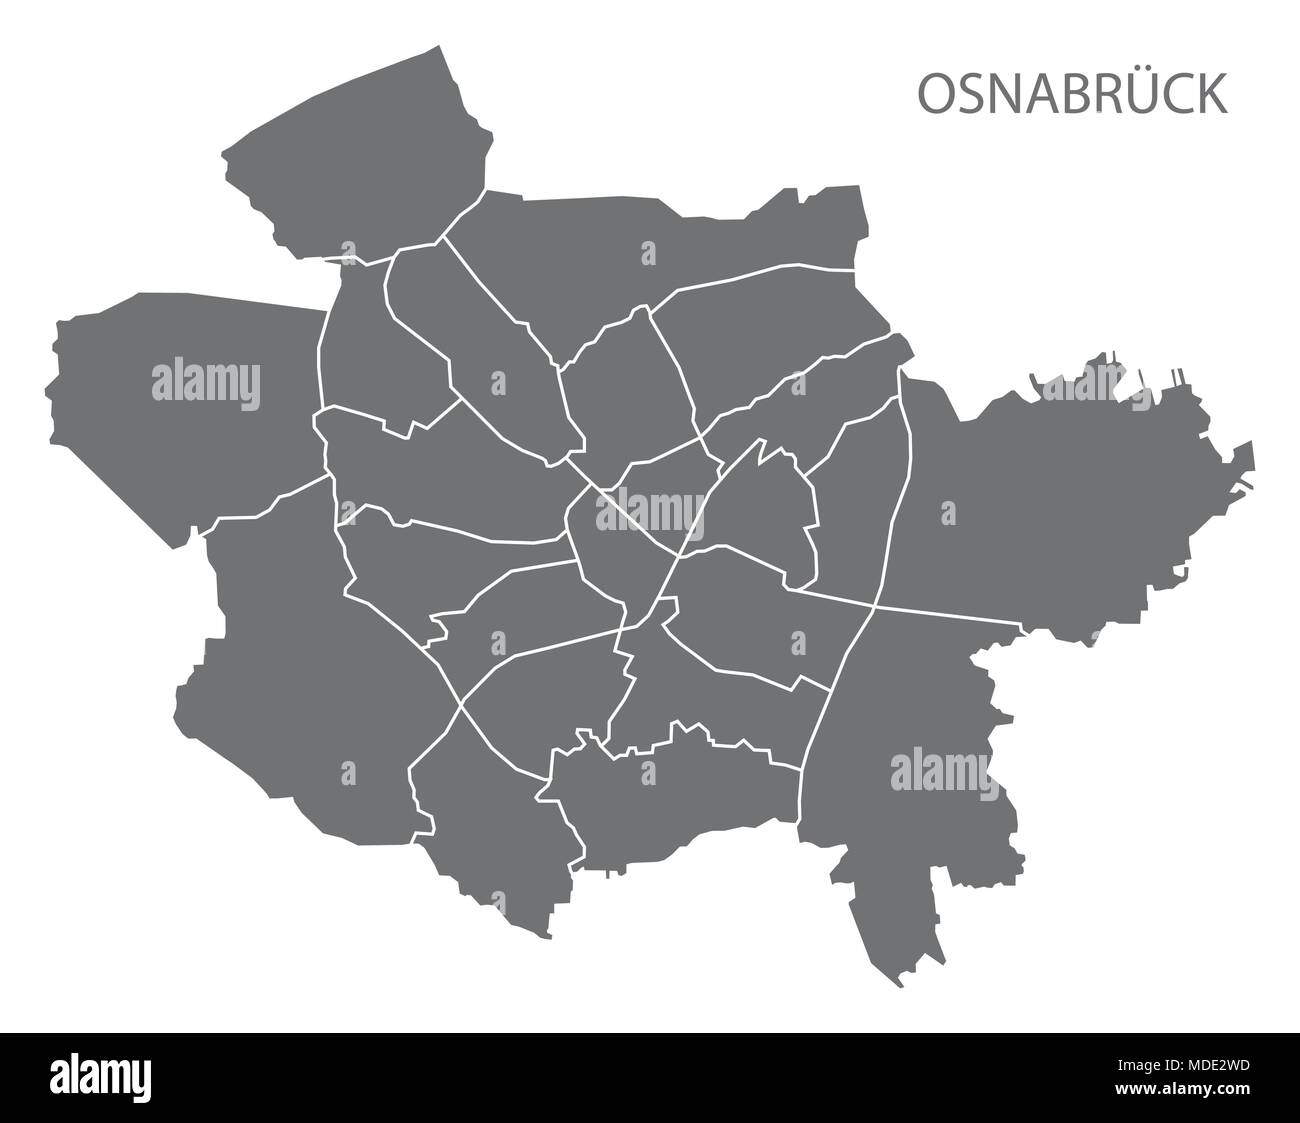 Osnabrück Stadtplan mit Bezirken Grau Abbildung silhouette Form Stock Vektor